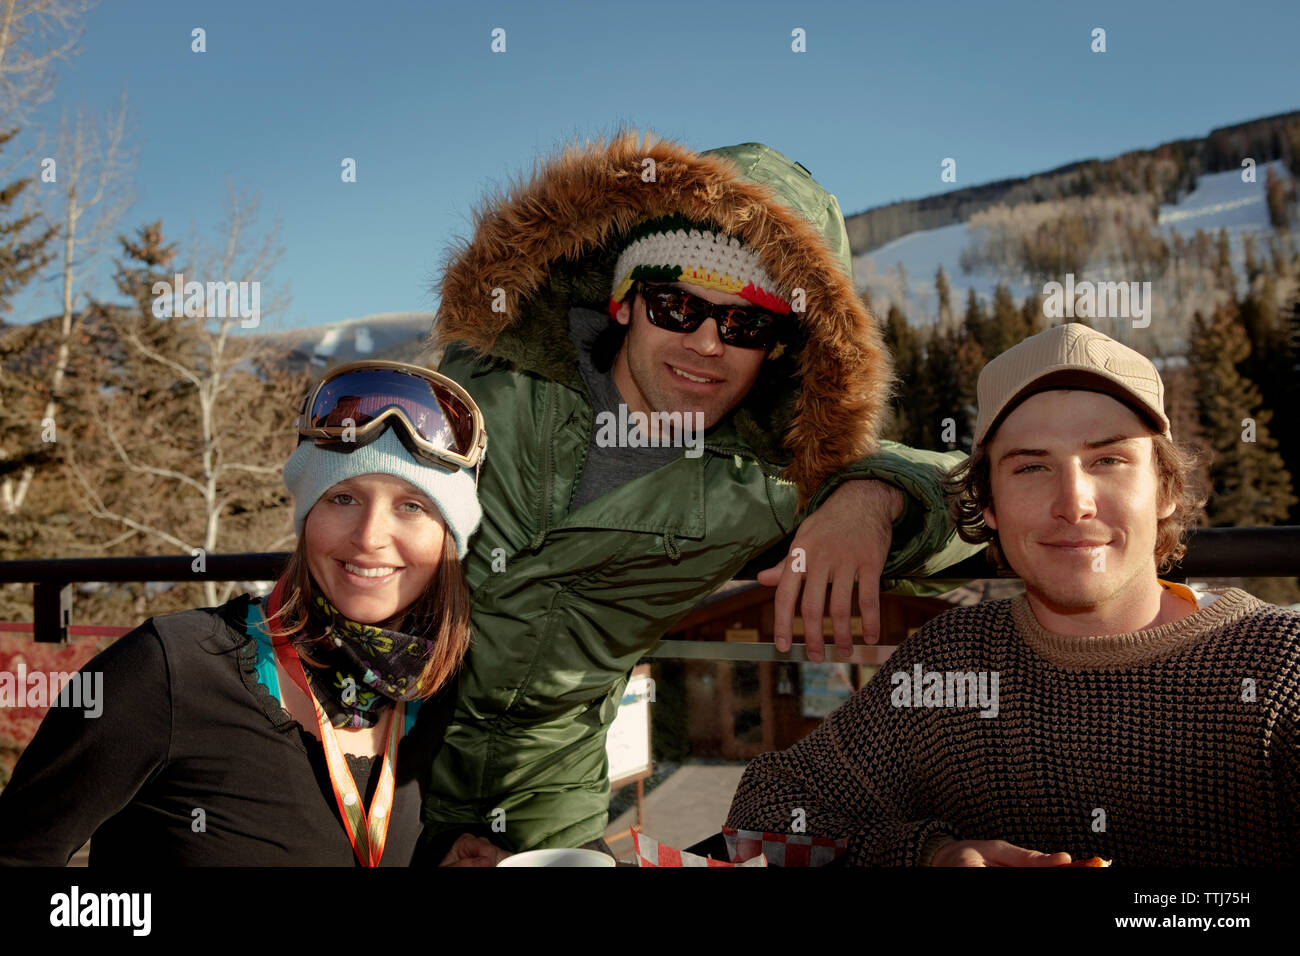 Retrato de amigos sentado en ski resort Foto de stock